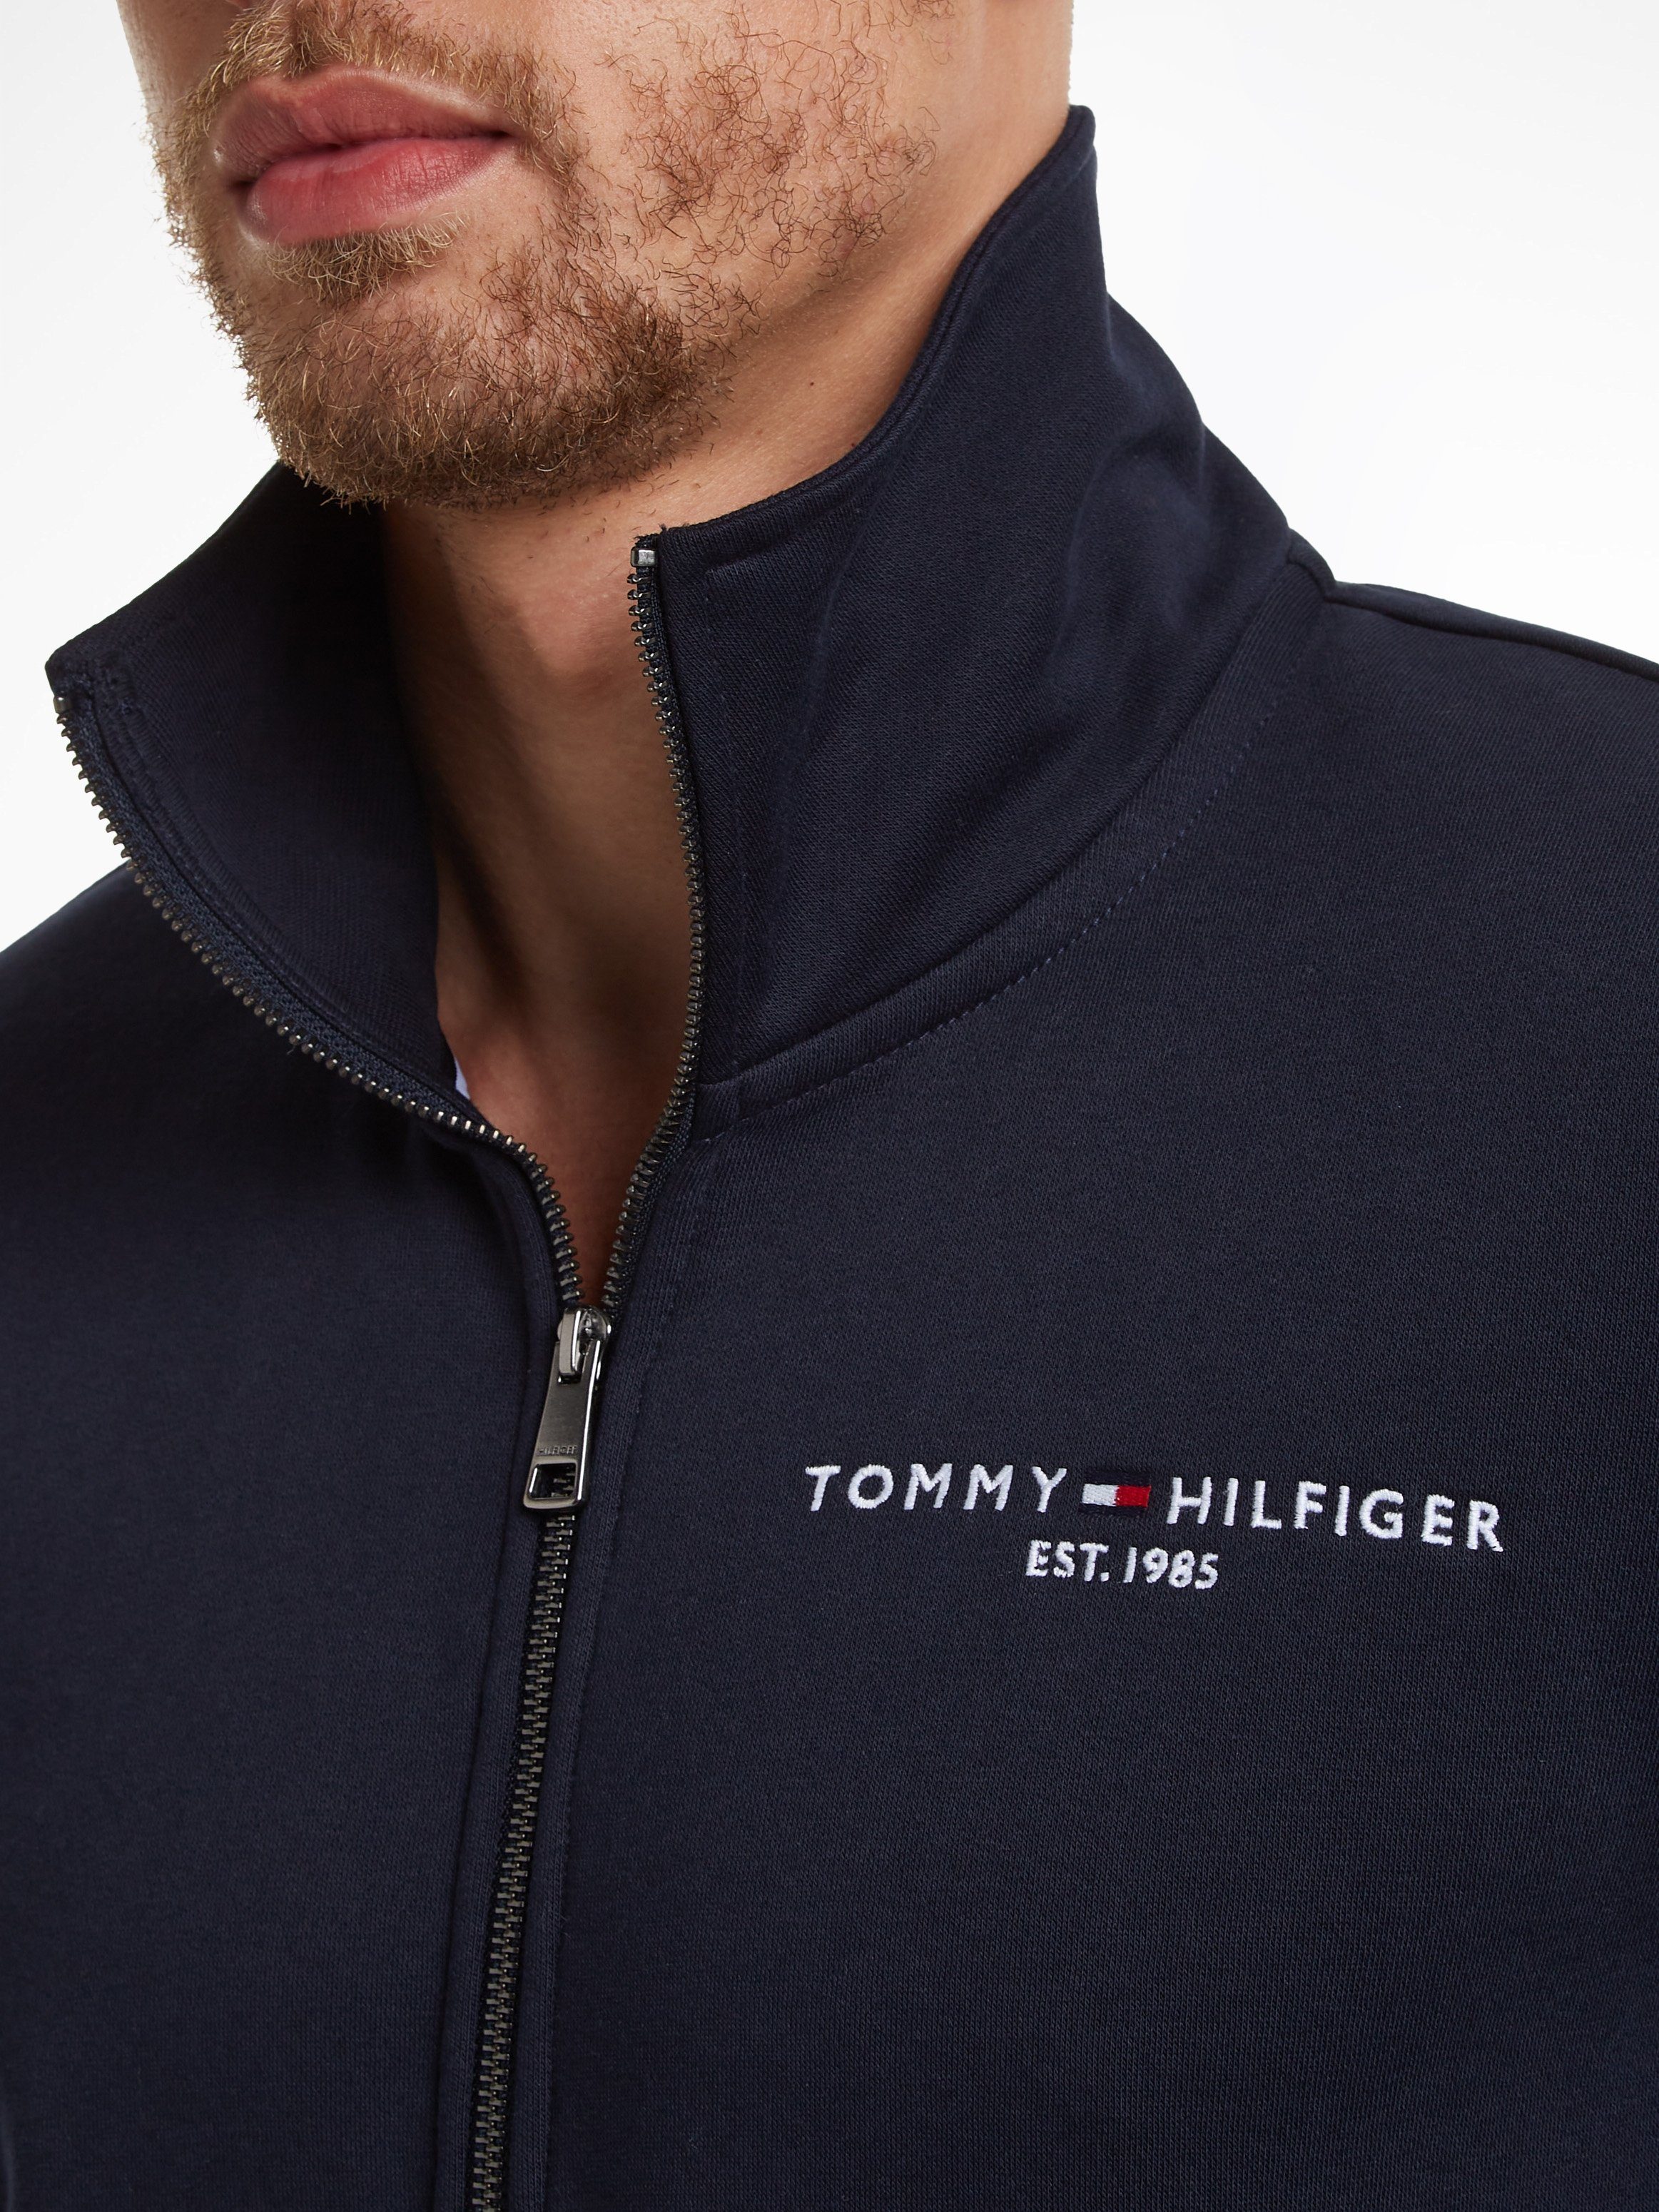 Tommy Hilfiger Sweater LOGO mit ZIP blau THRU geteilter Kängurutasche COLLAR TOMMY und Reißverschluss STAND